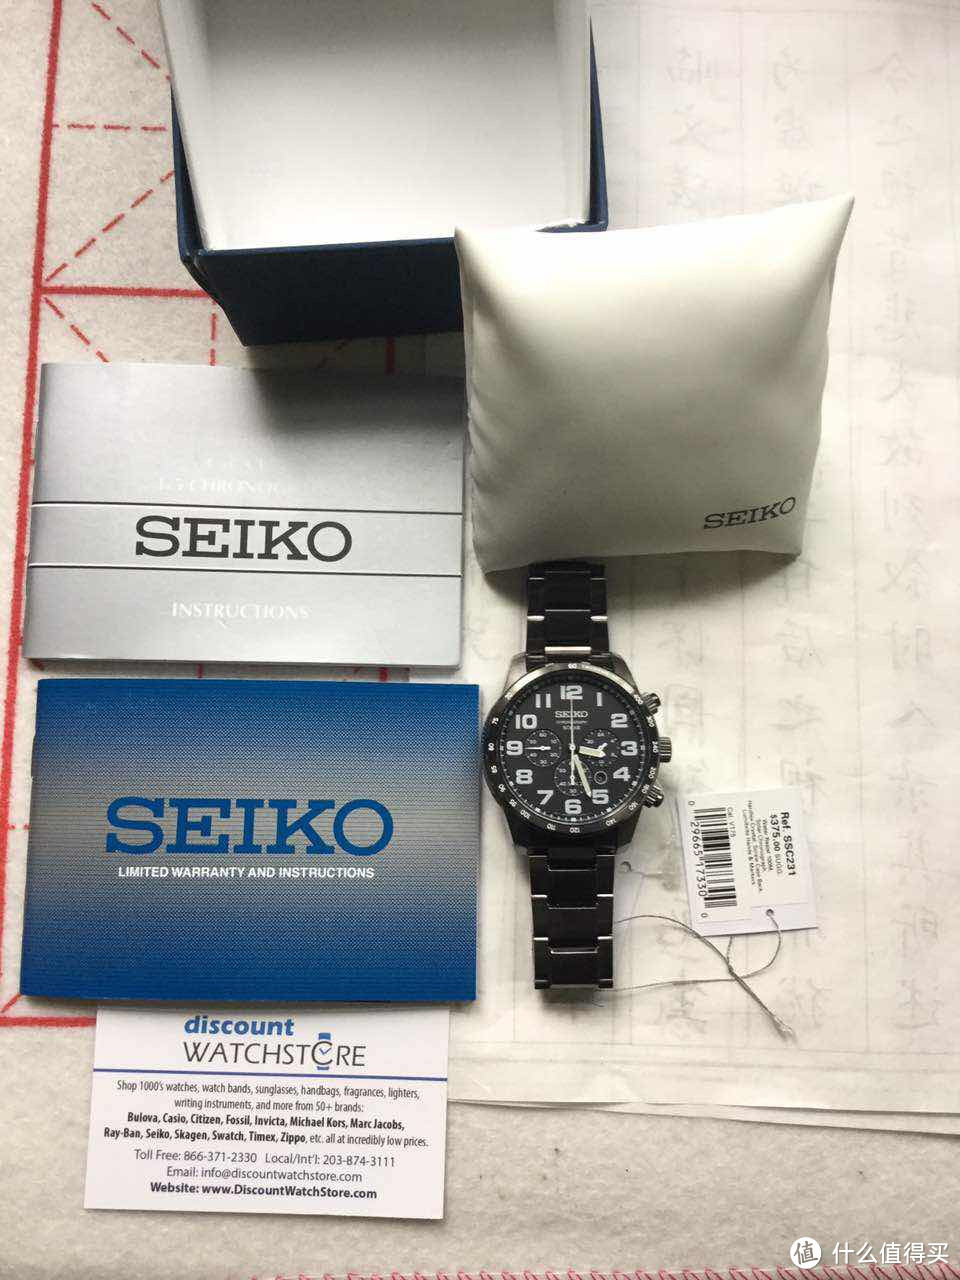 漫漫海淘实操第一步——SEIKO 精工 SSC231 Sport 男式太阳能腕表